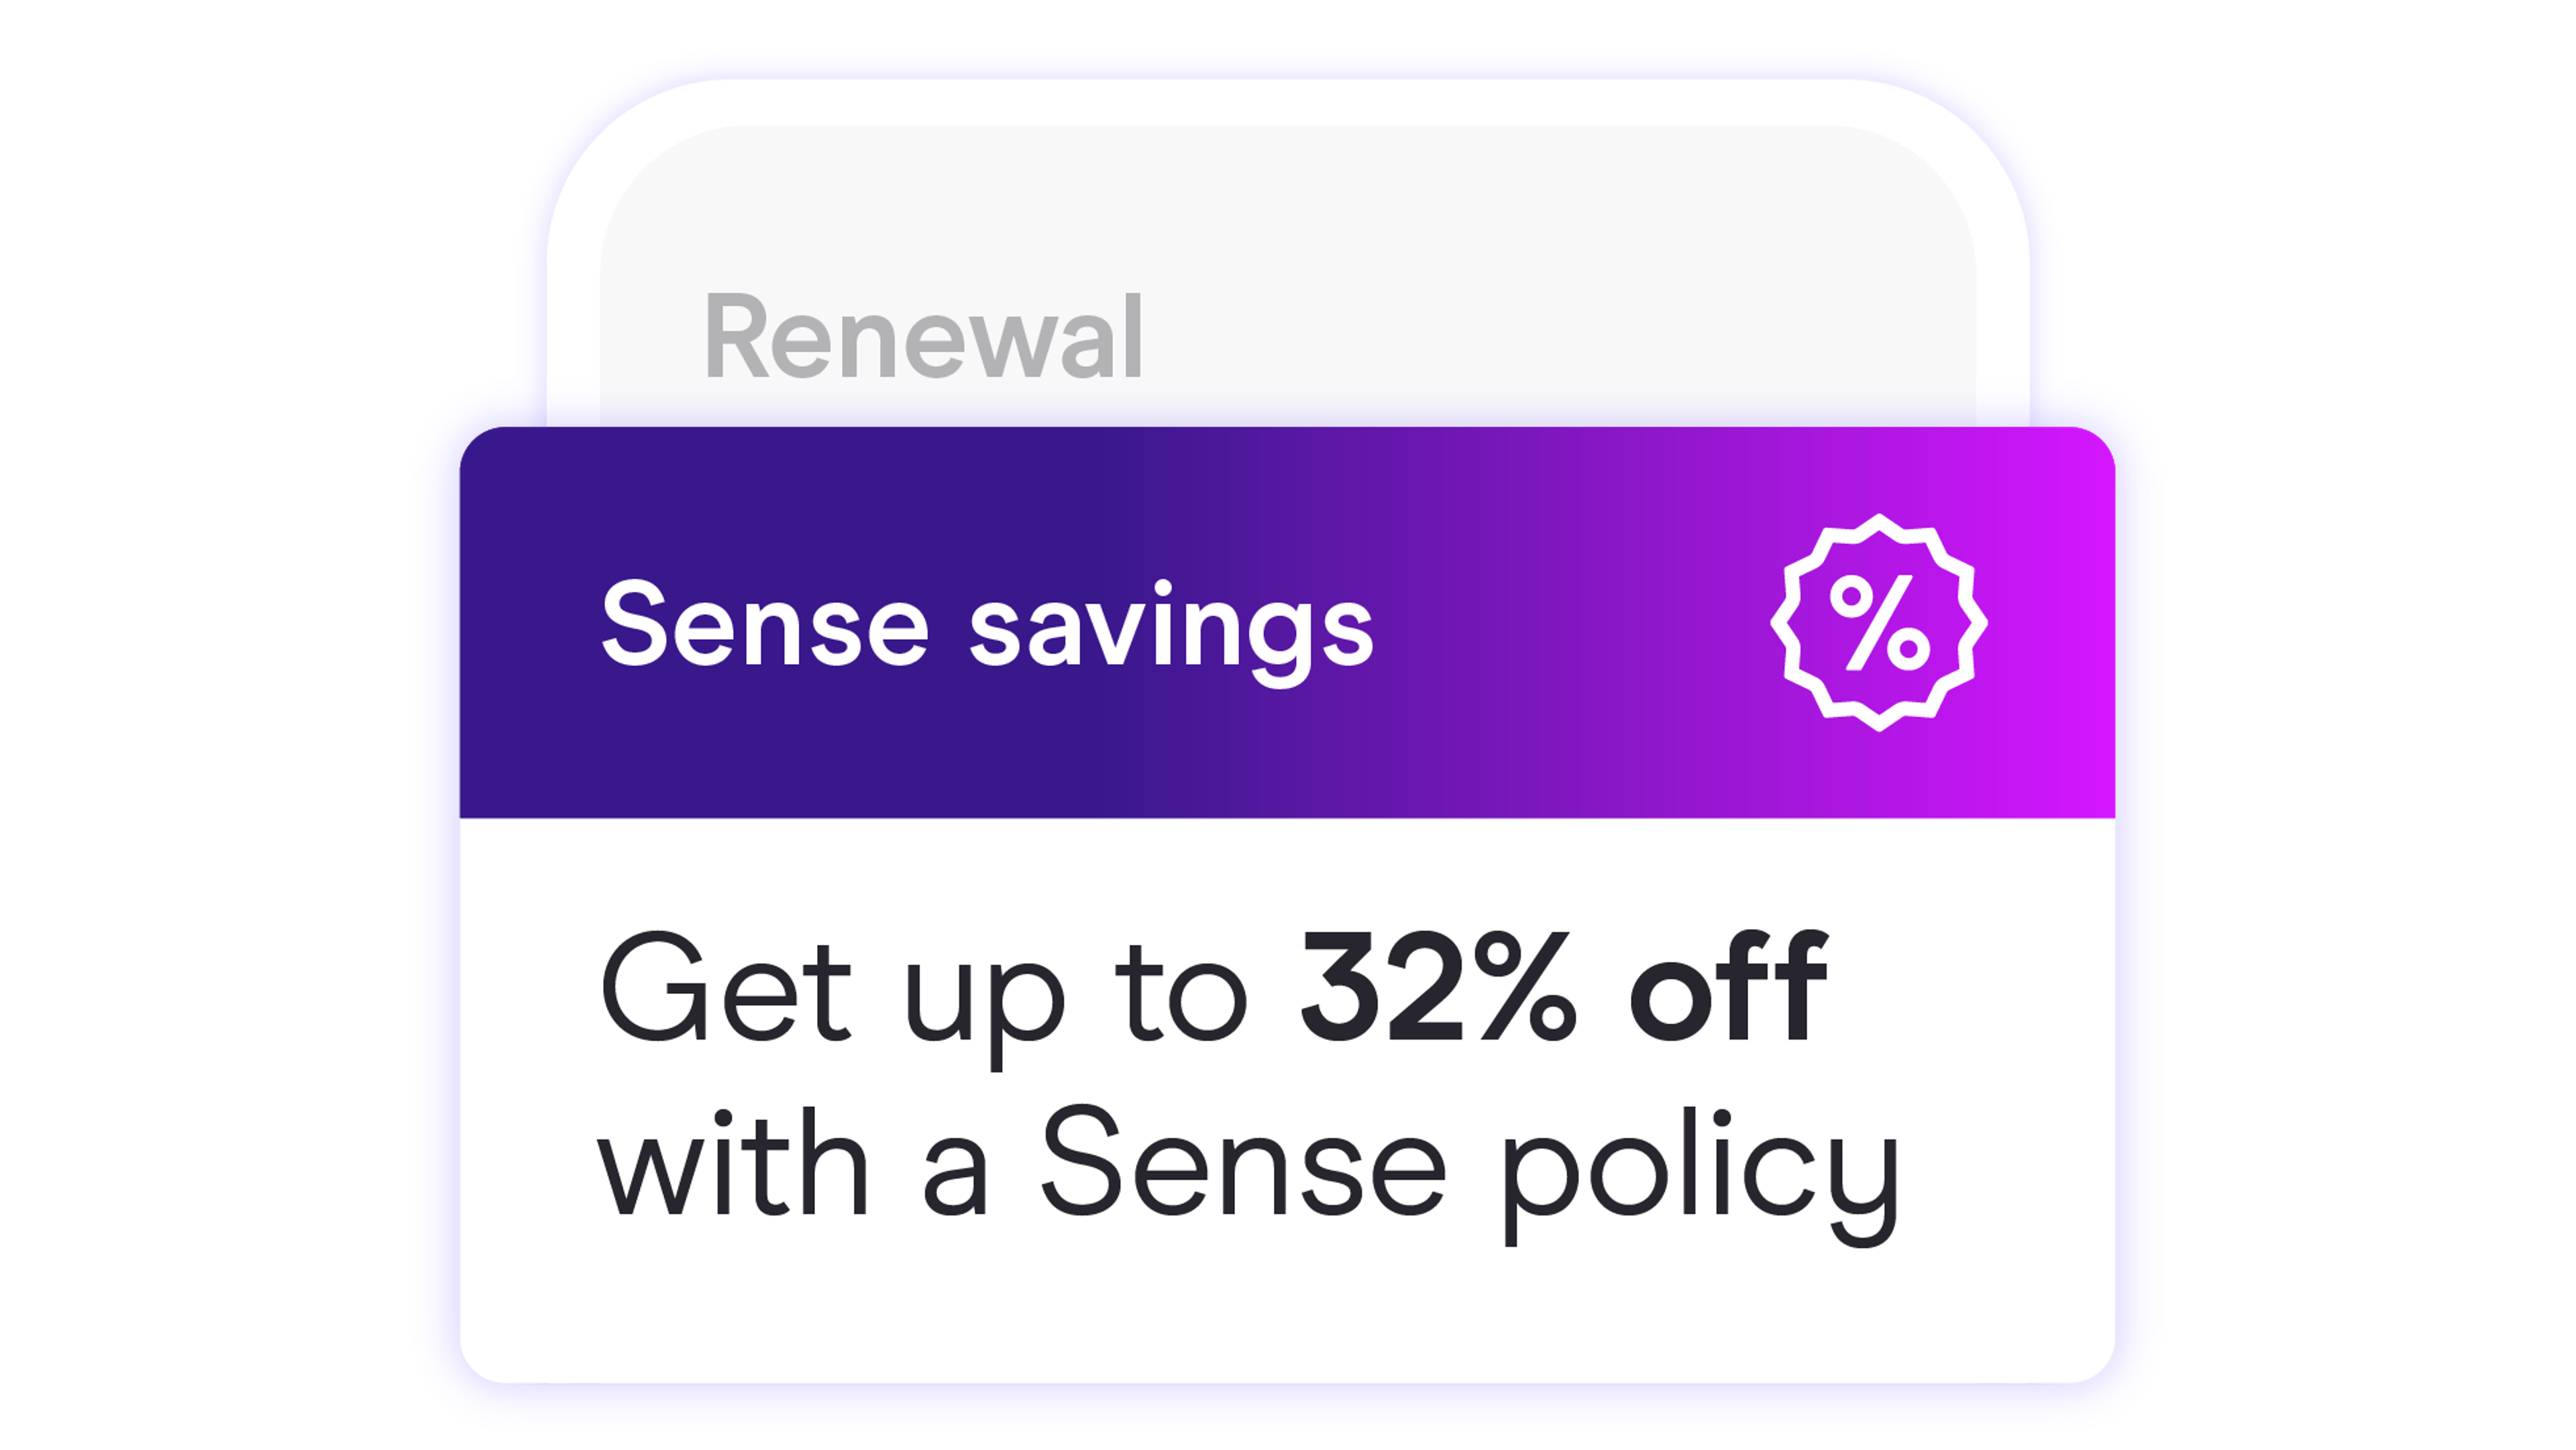 Zego Sense app showing 32% Sense saving at renewals